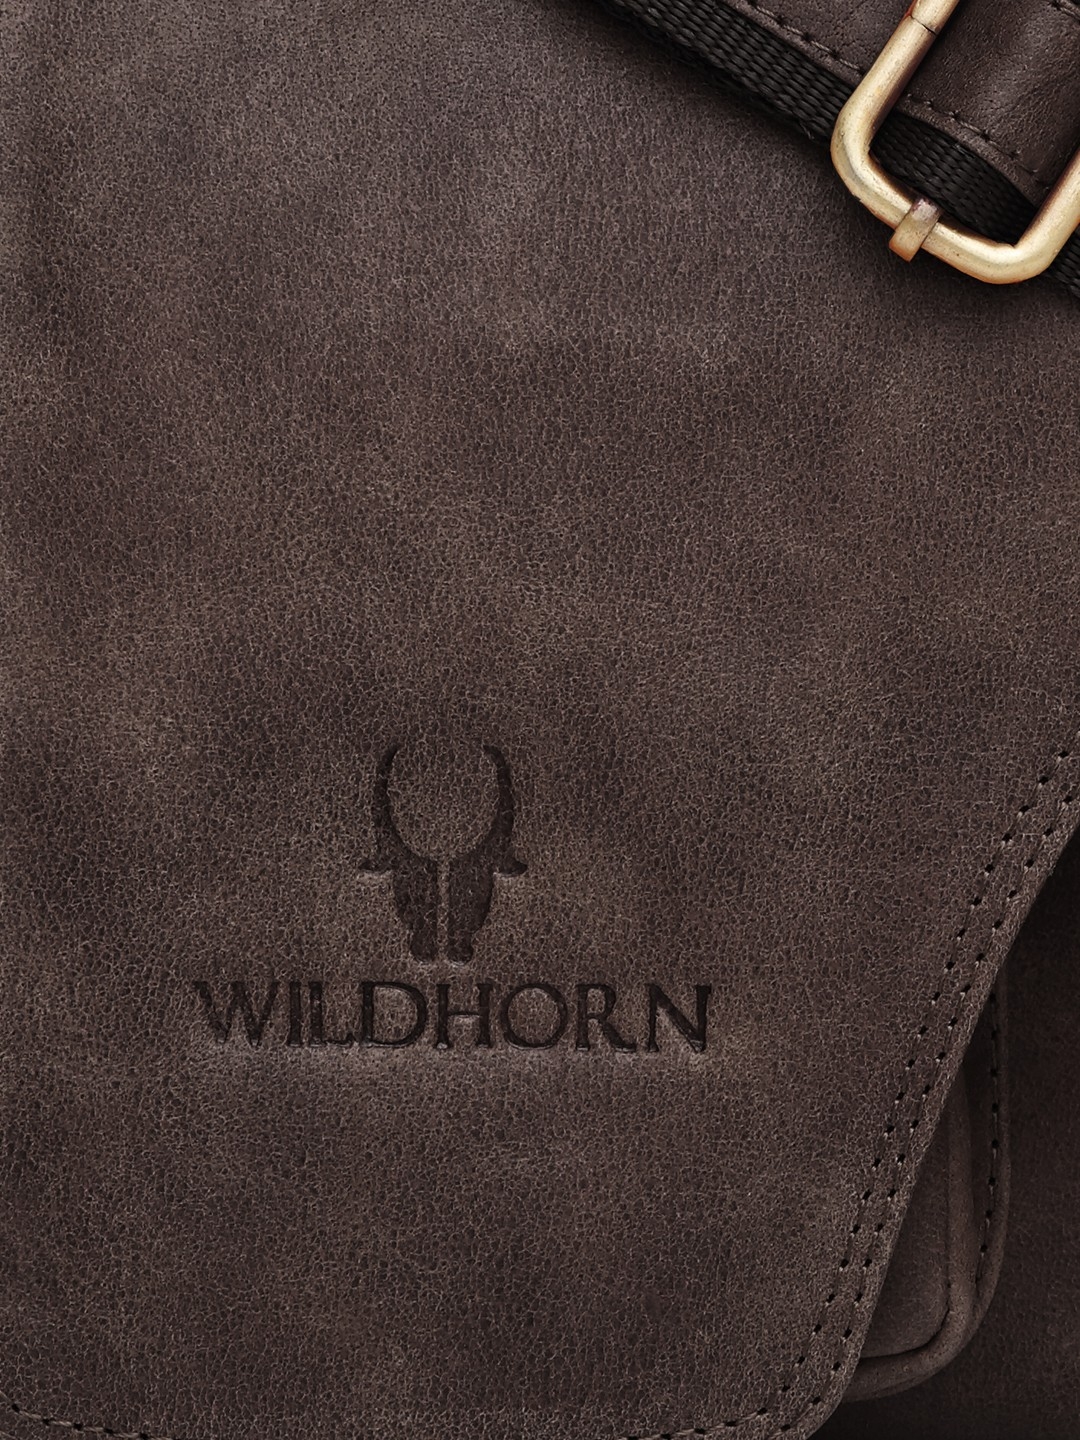 WildHorn | WildHorn Brown Classic Leather Adjustable Strap Messenger Bag for Men  4